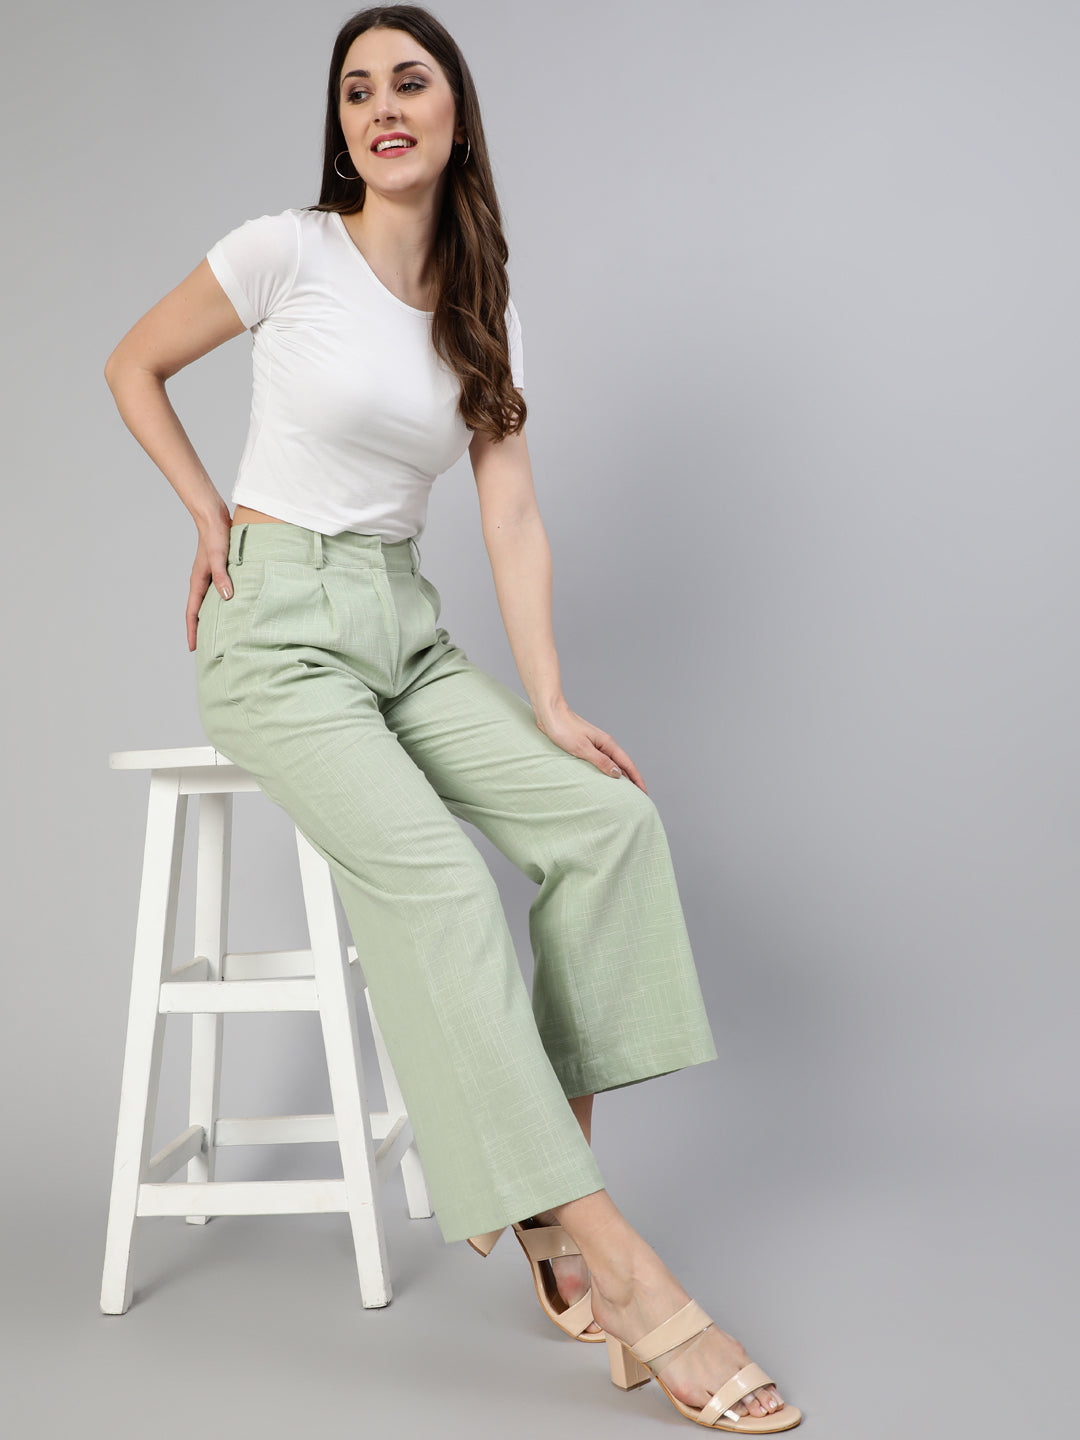 Buy parallel pants for women